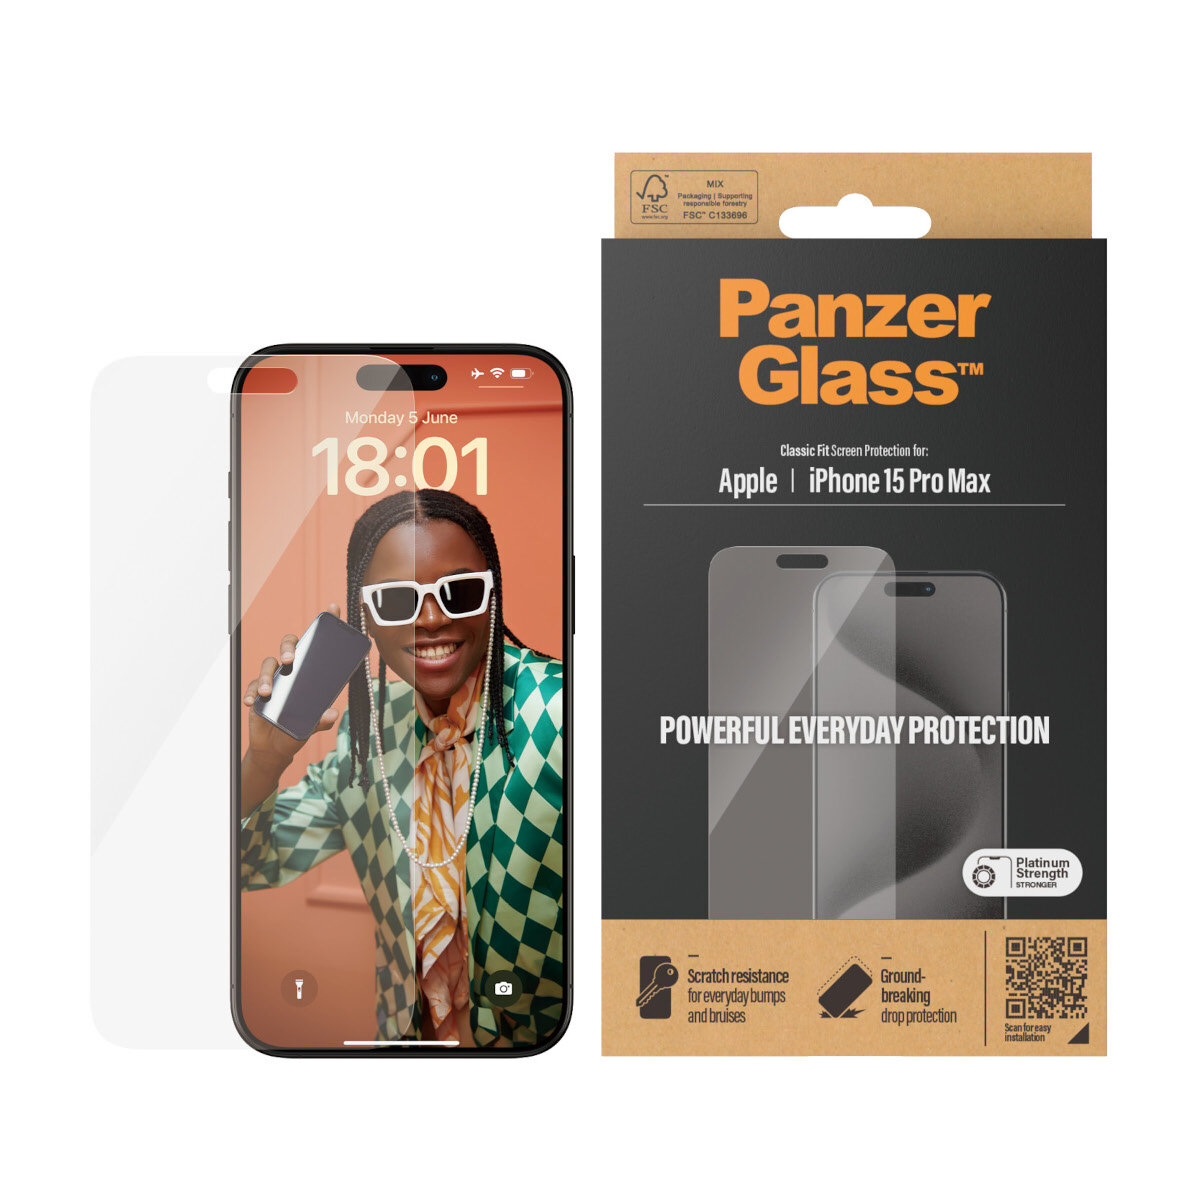 Szkło hartowane PanzerGlass Classic Fit iPhone15 Pro Max widoczne opakowanie oraz telefon z przyłożonym szkłem